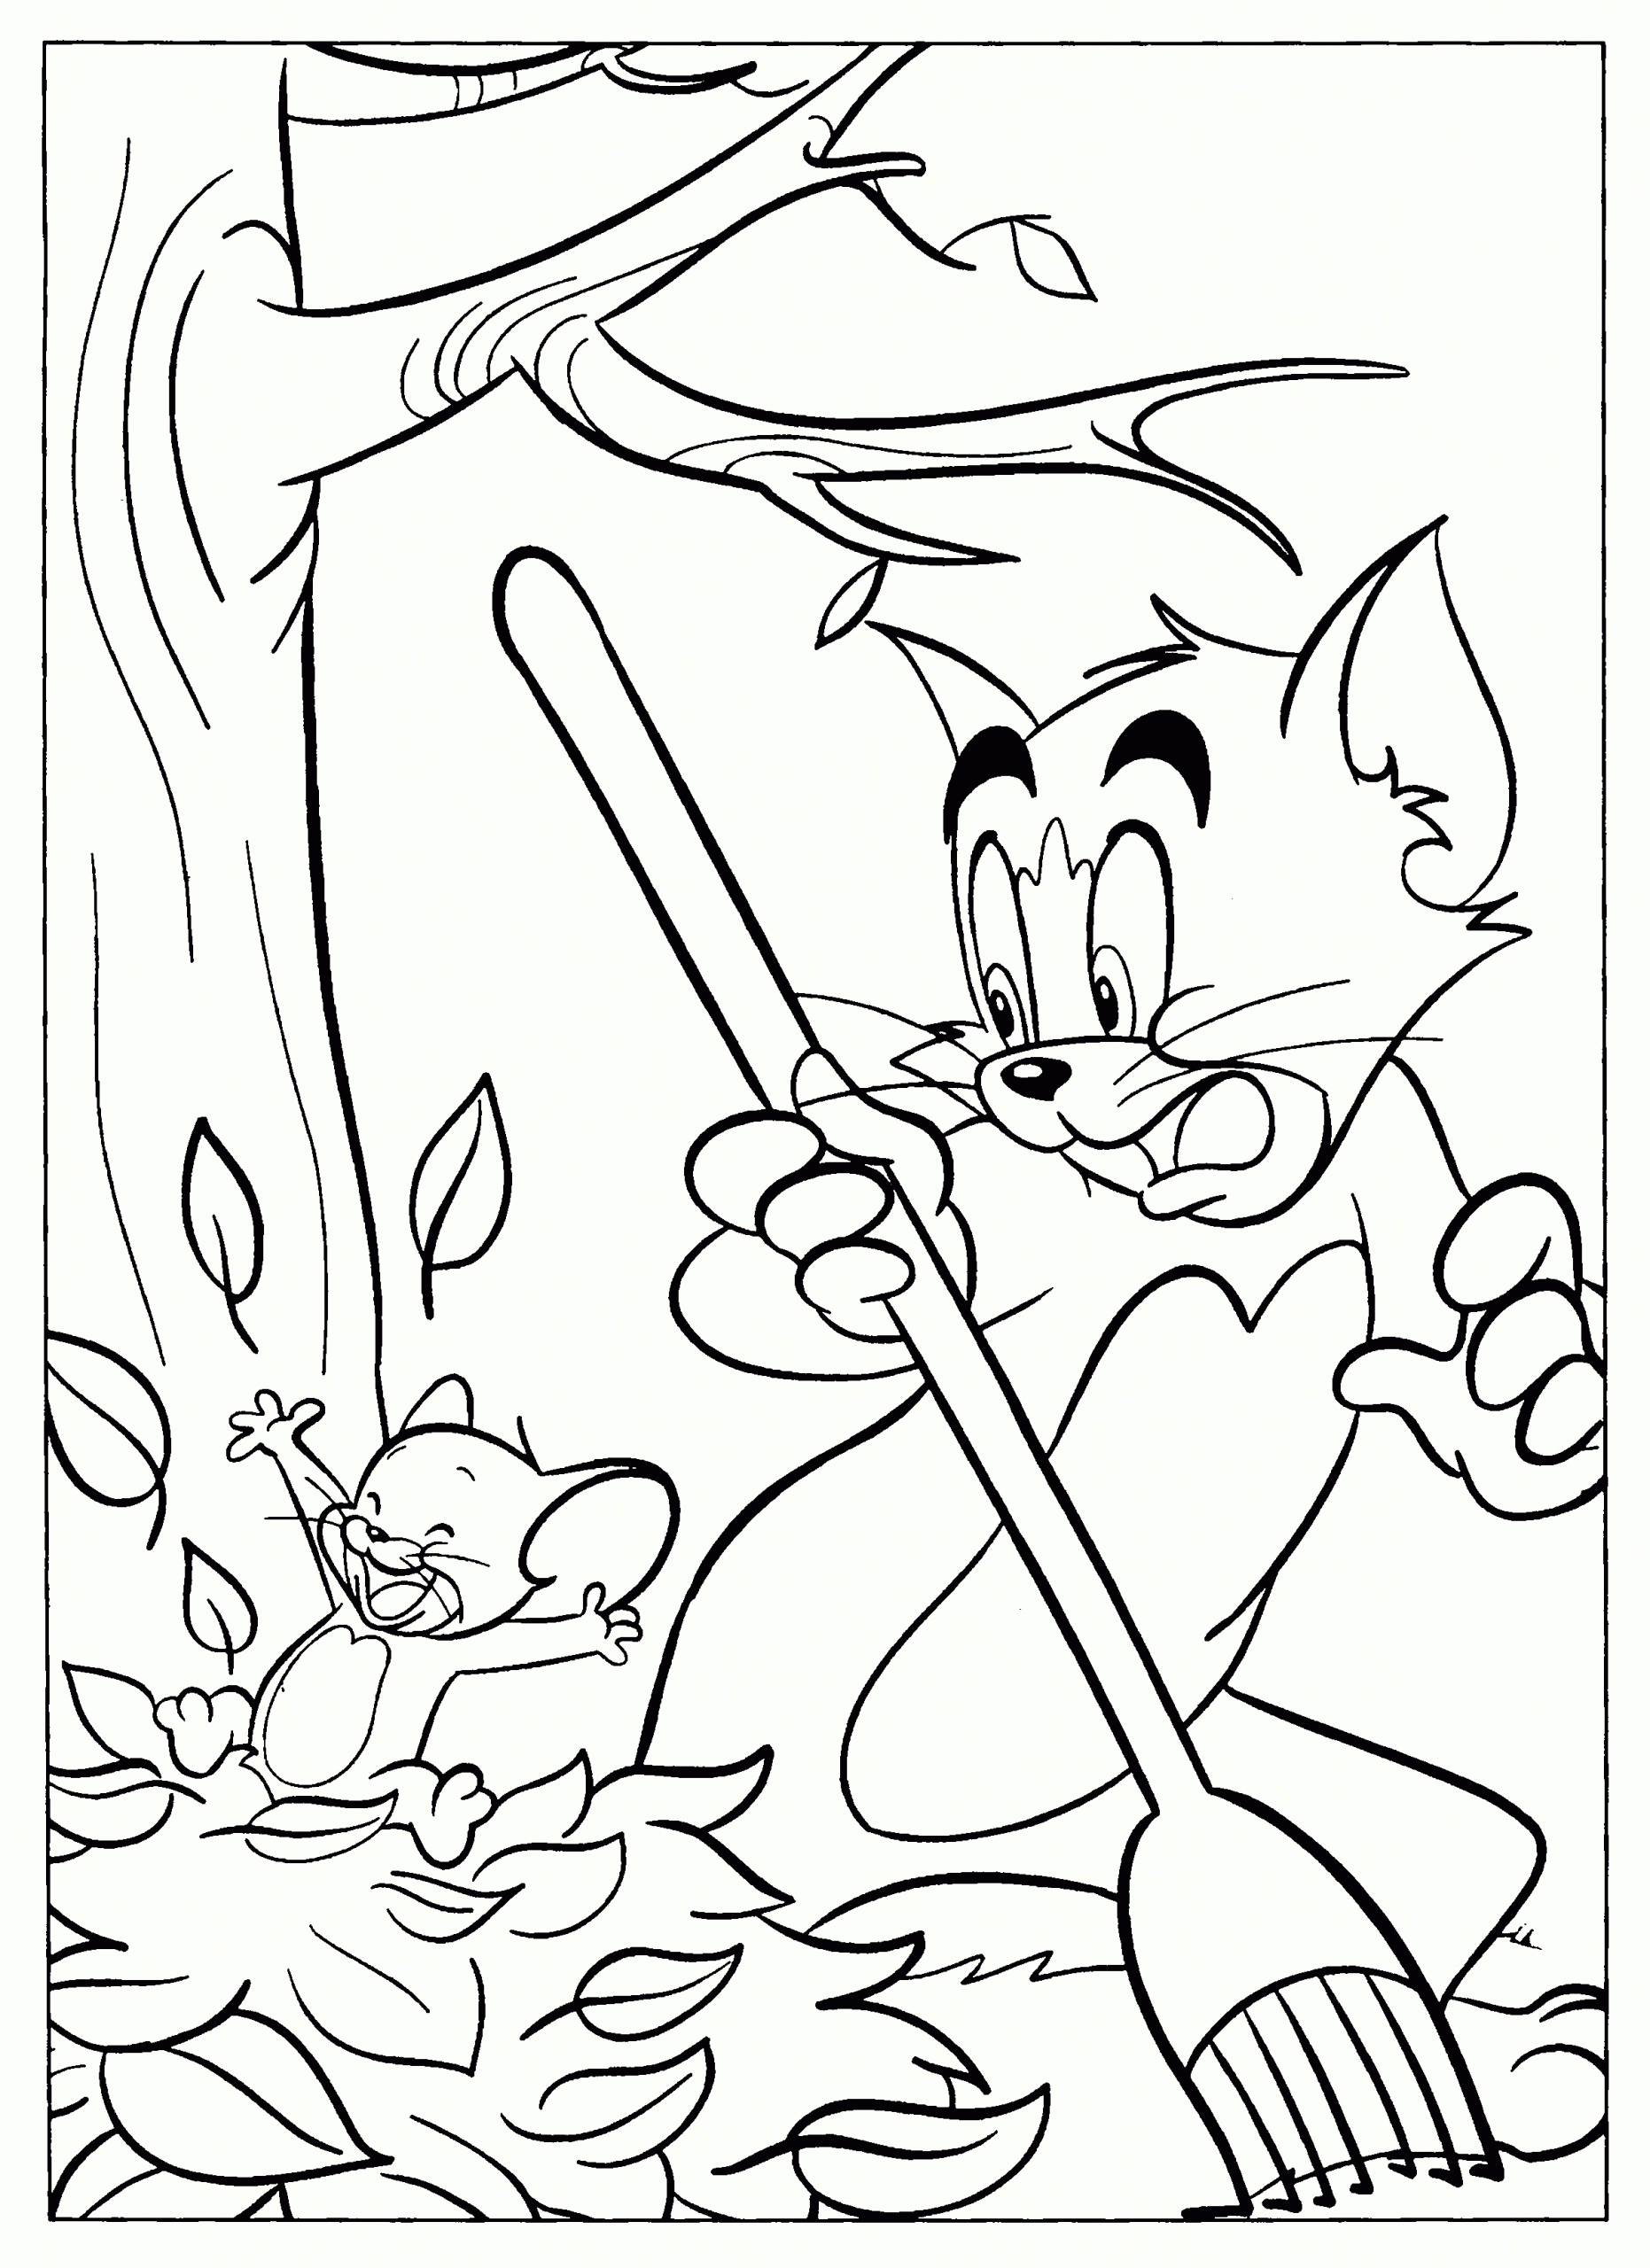 Tom Und Jerry Malvorlagen - Disneymalvorlagen.de bei Tom Und Jerry Ausmalbild